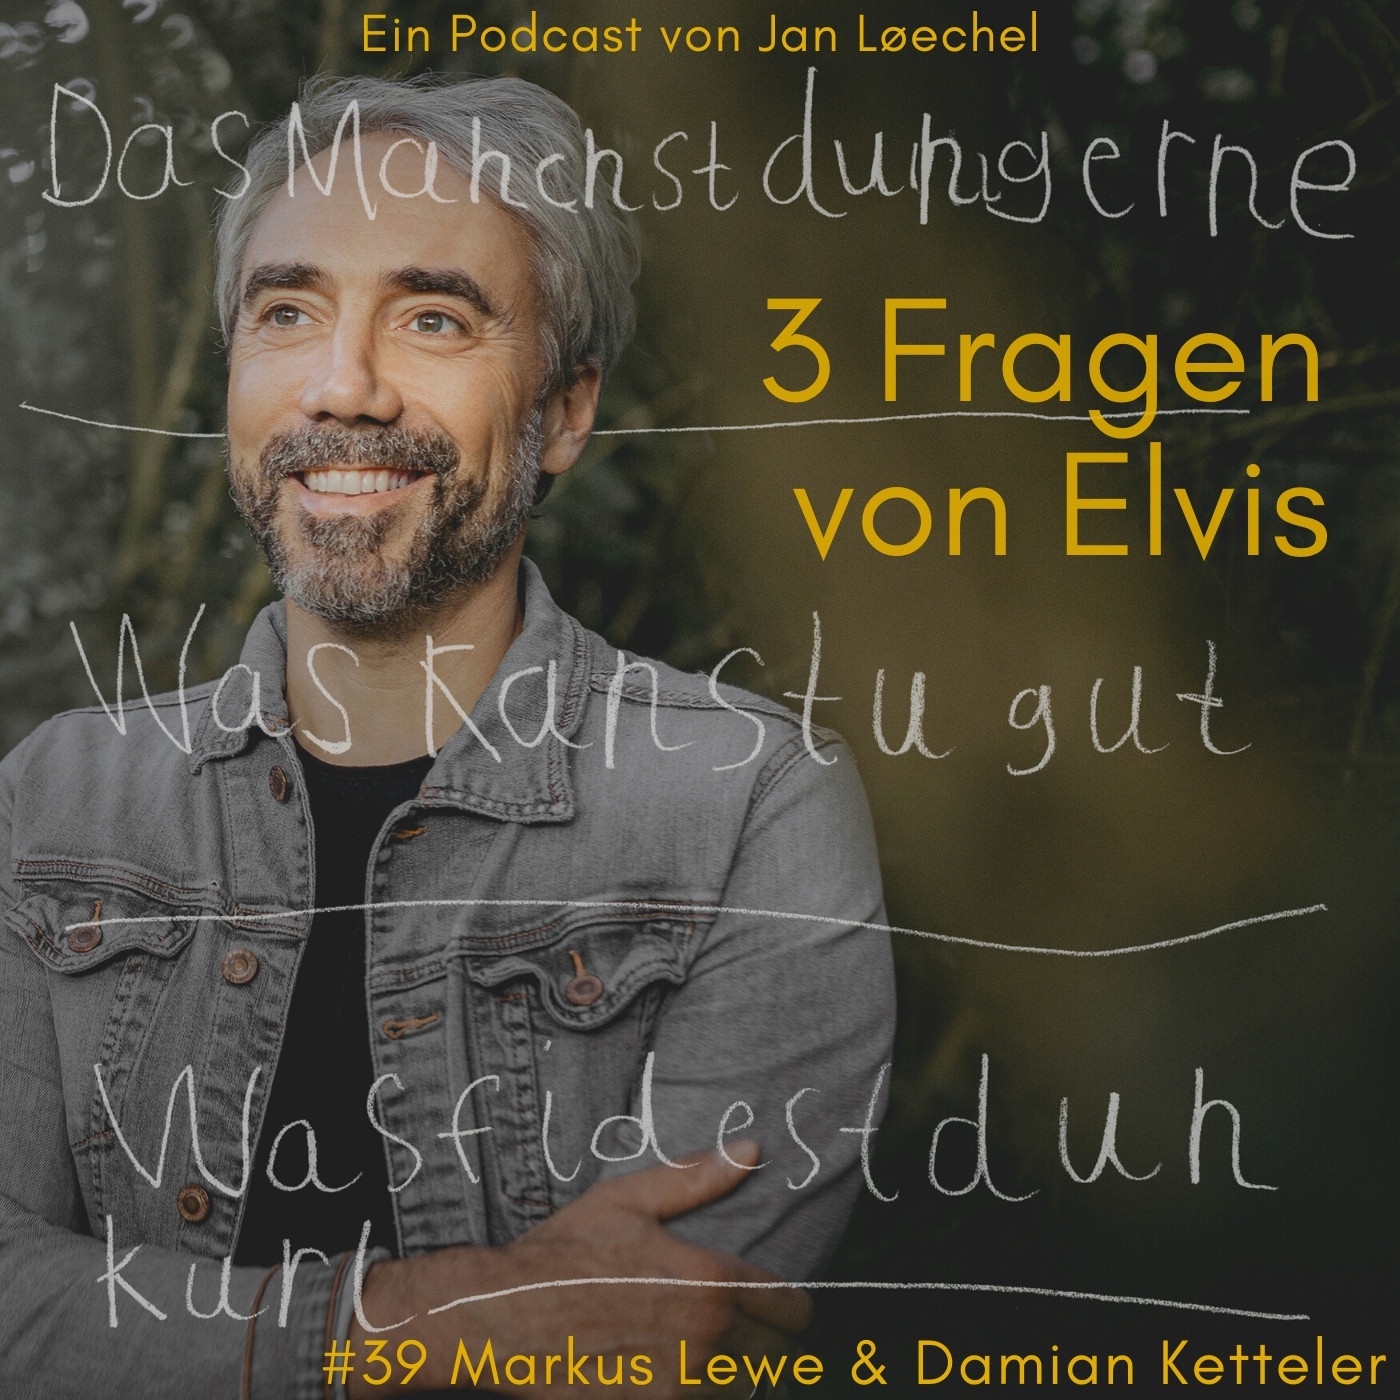 #39 Markus Lewe (OB Münster) & Damian Ketteler (Musiker)